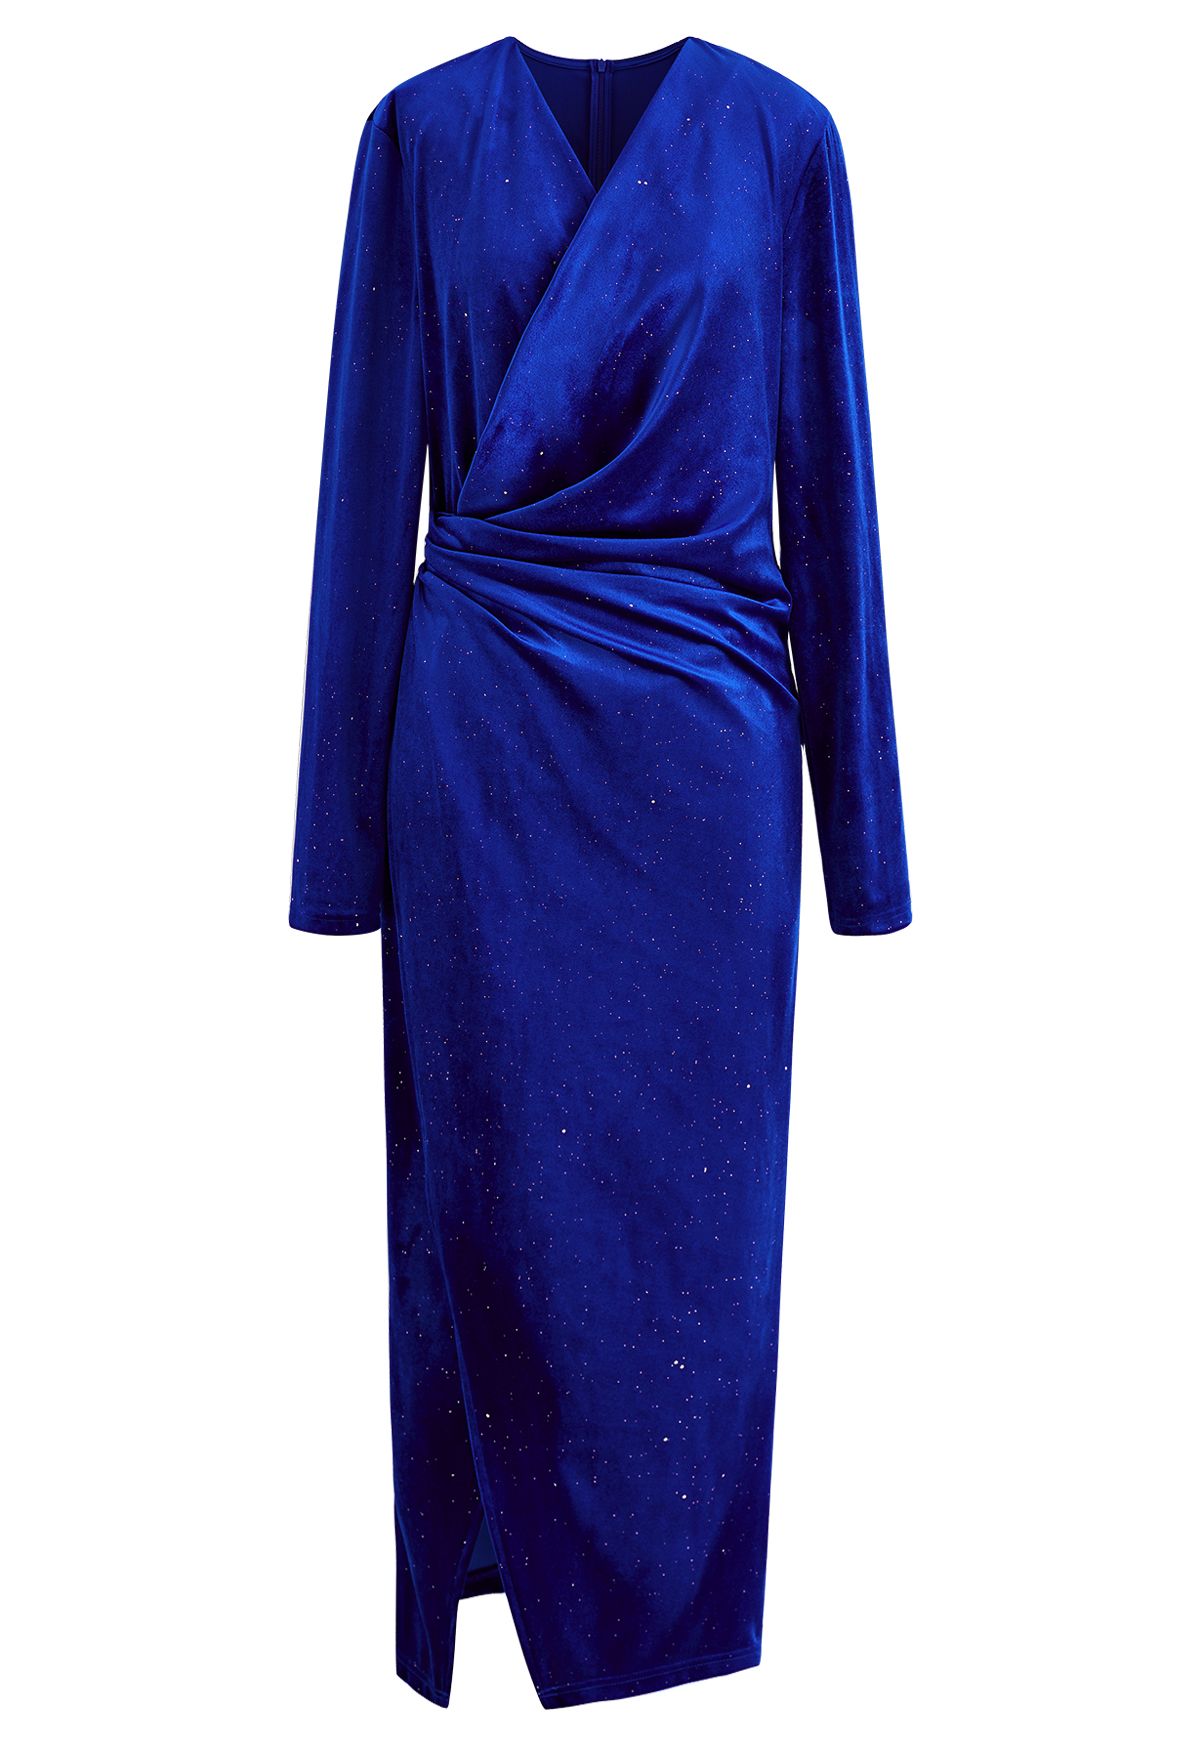 فستان متوسط الطول ملفوف من المخمل اللامع باللون الأزرق